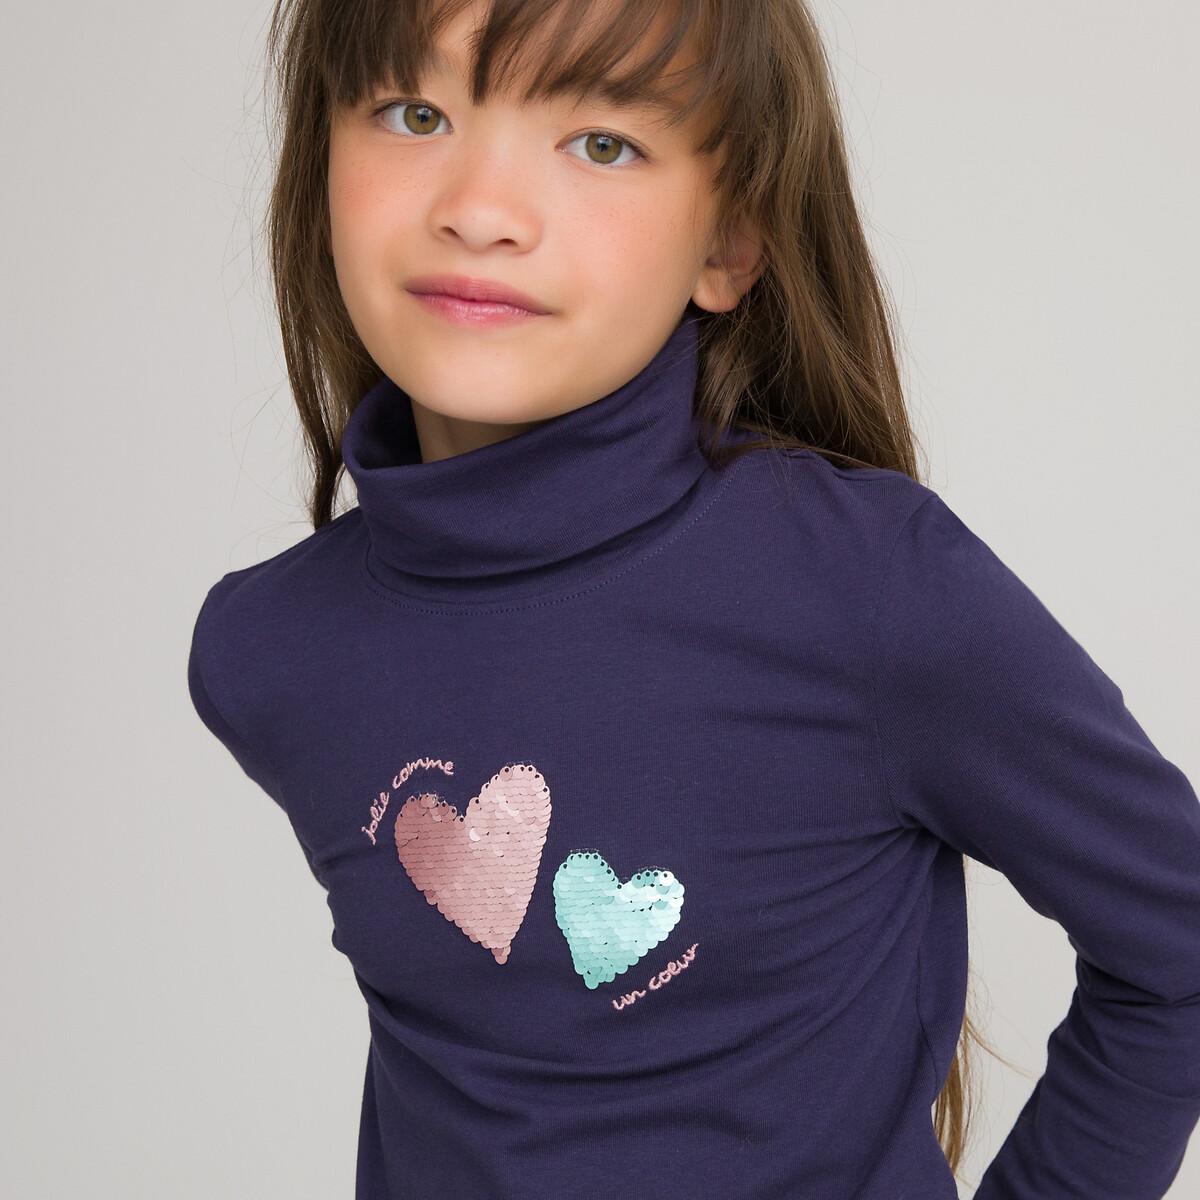 Пуловер Тонкий с блестками биохлопок 3-12 лет 4 года - 102 см синий